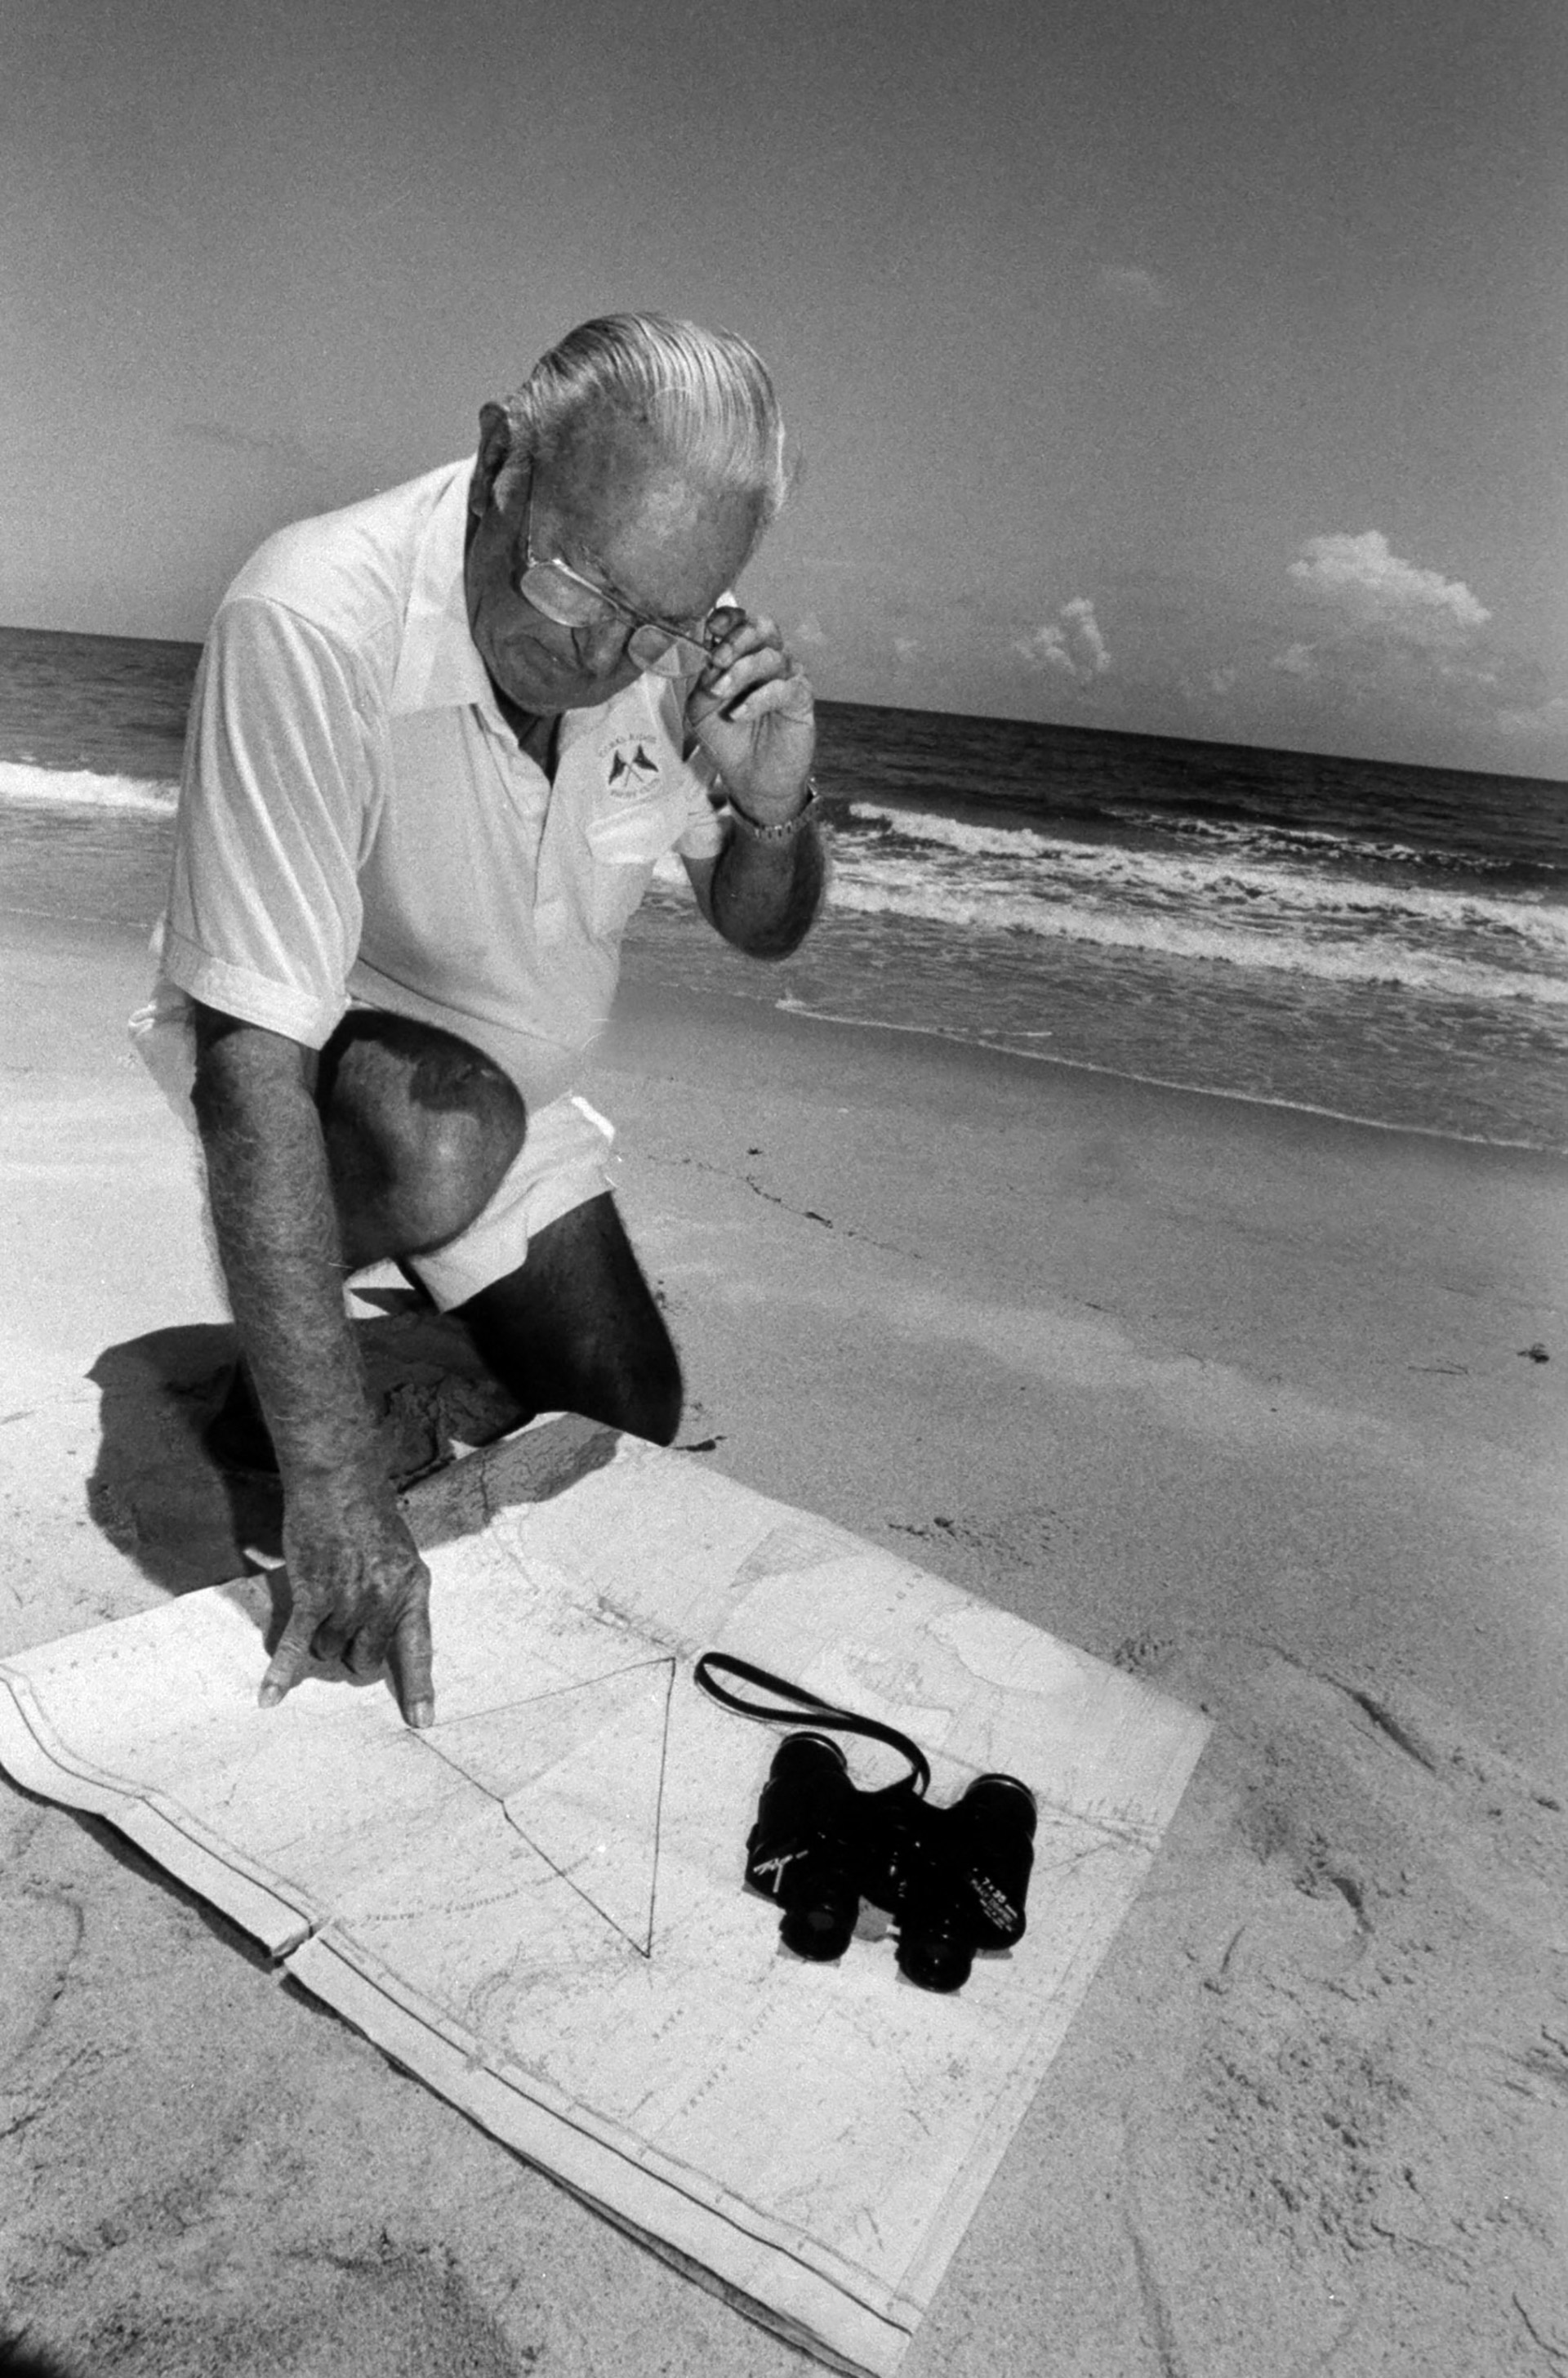 El exaviador de la Armada Dick Adams en la playa examinando el mapa que tiene un triángulo marcado sobre la región del Atlántico para indicar el Triángulo de las Bermudas (Photo by Acey Harper/Getty Images)